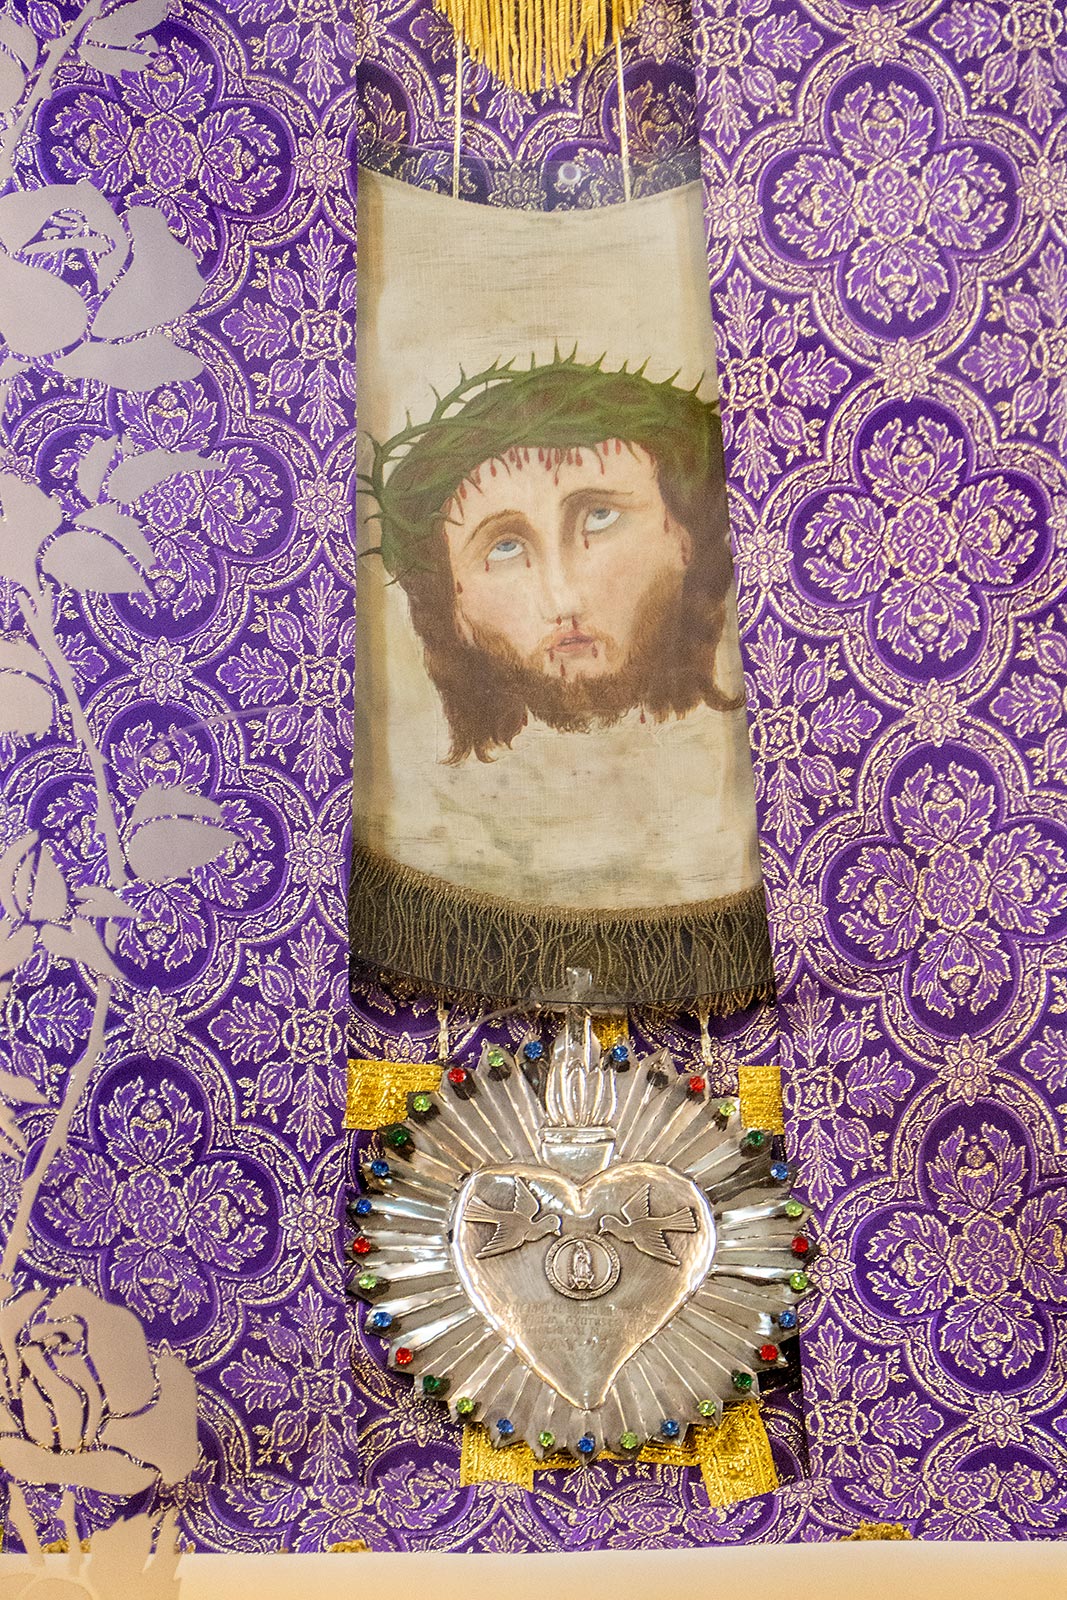 İsa'nın kumaş üzerindeki mucizevi görüntüsü, Santuario del Divino Rostro'daki ana sunak